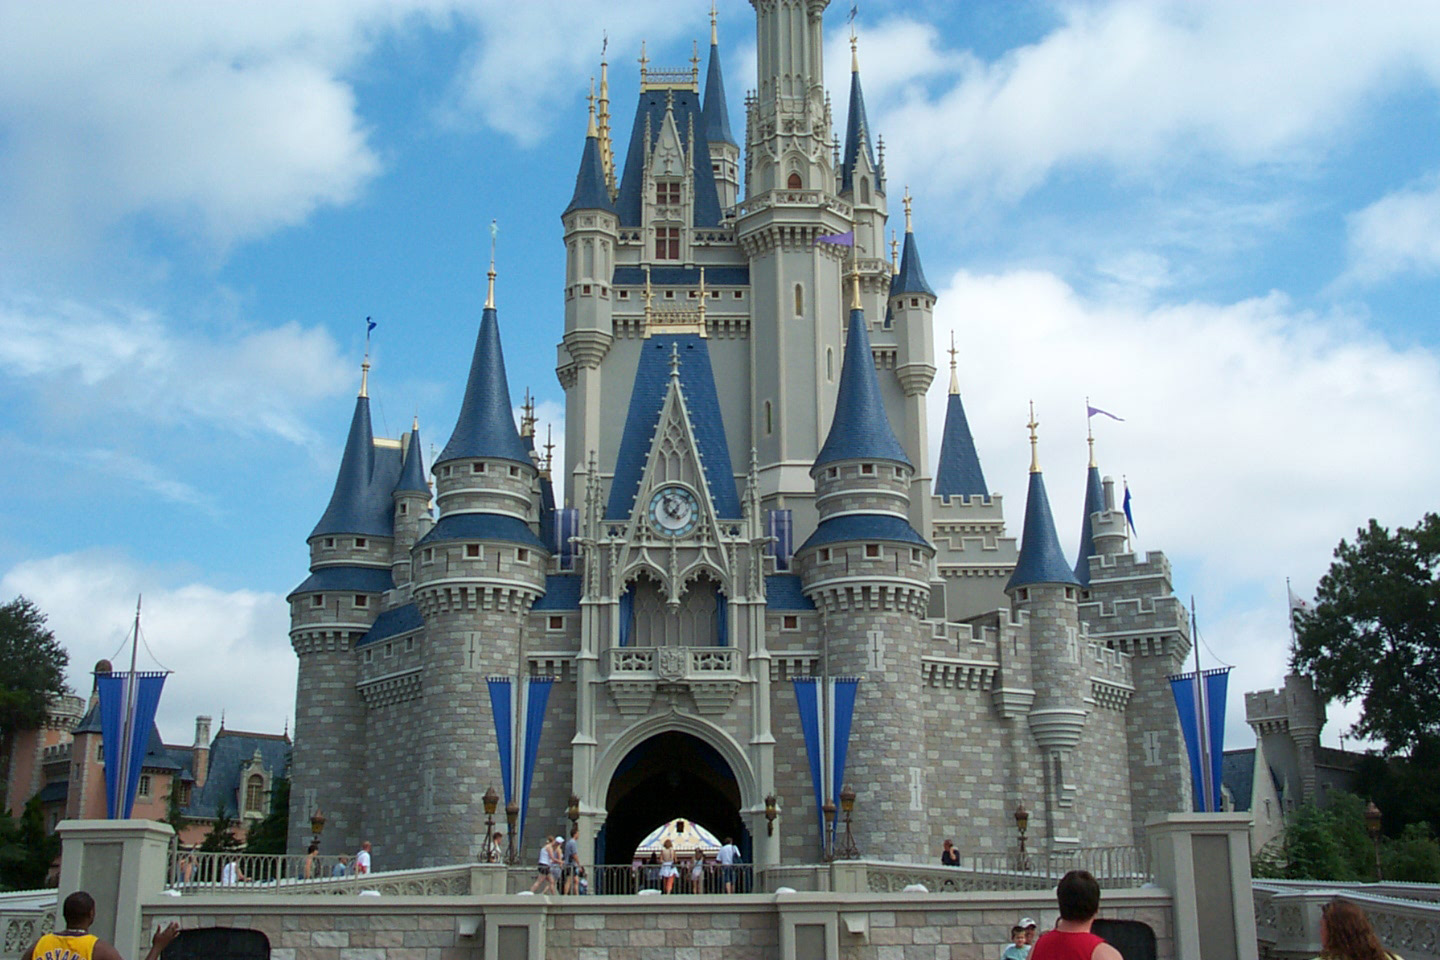 Una propuesta matrimonial digna de una princesa es posible en Disney (clickear para agrandar foto).